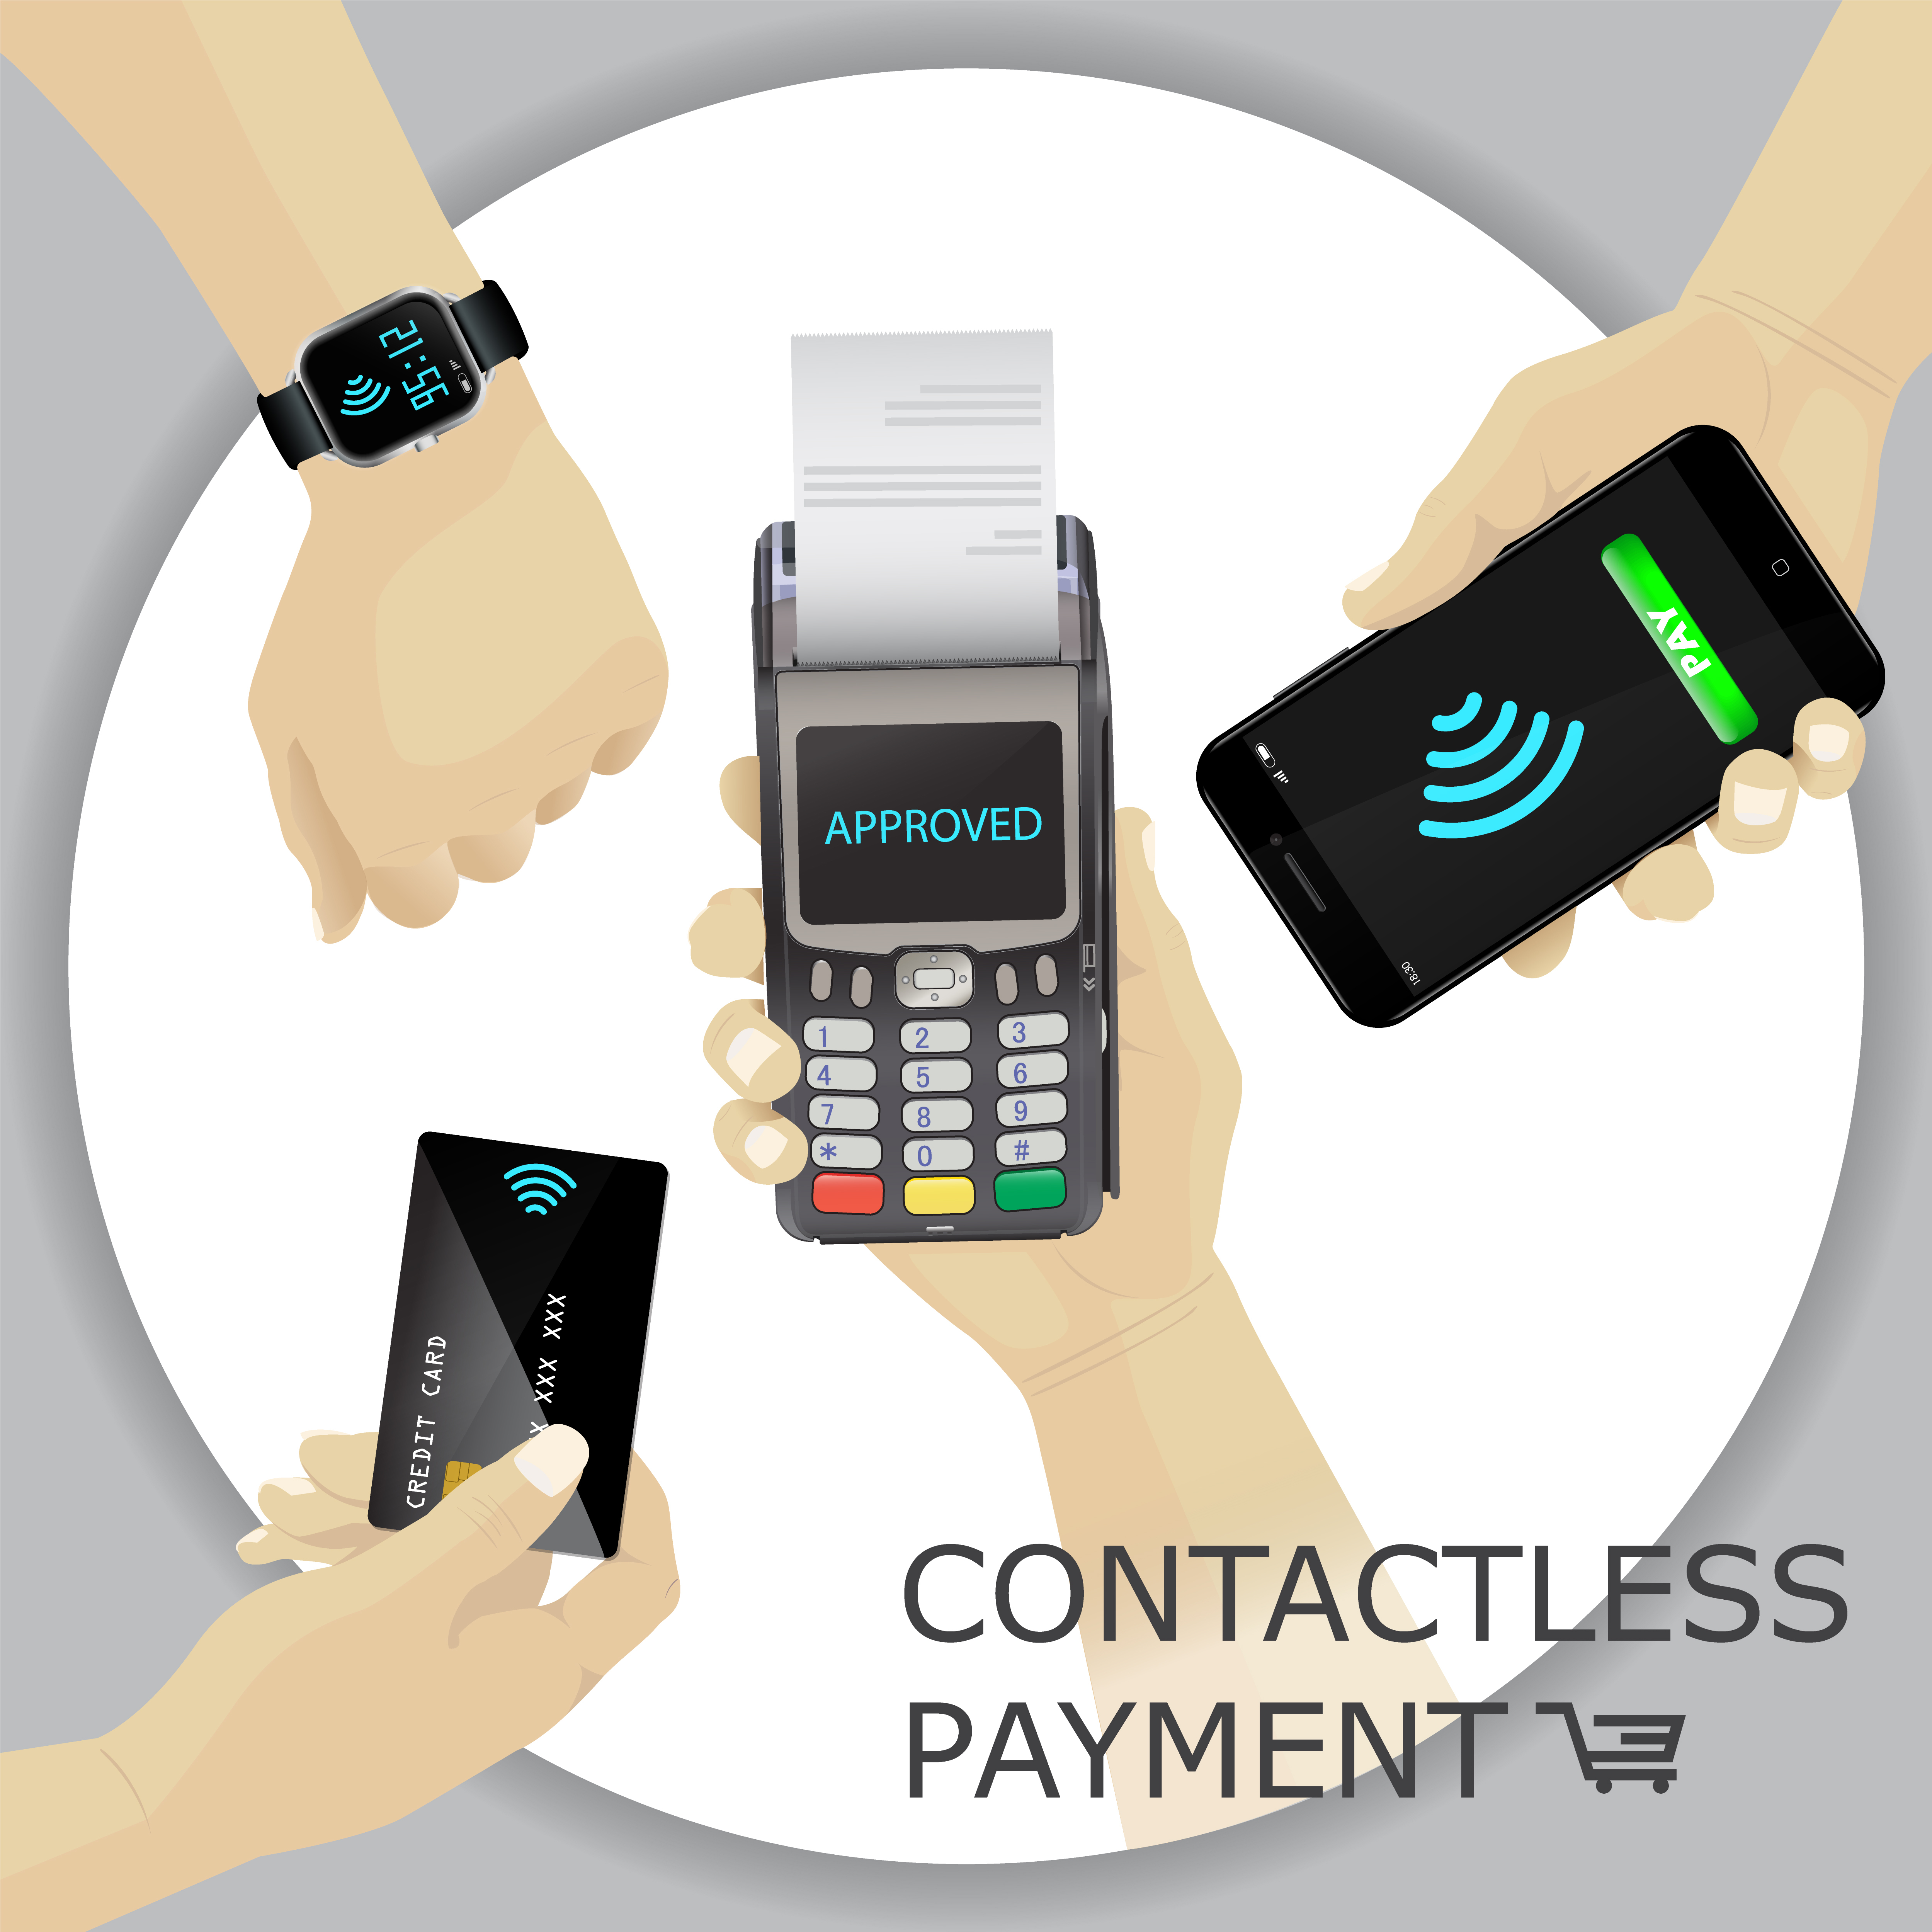 Установить оплату на часы. Бесконтактная оплата NFC. Значок бесконтактной оплаты. Оплата картой с телефона. Беспроводная оплата картой.